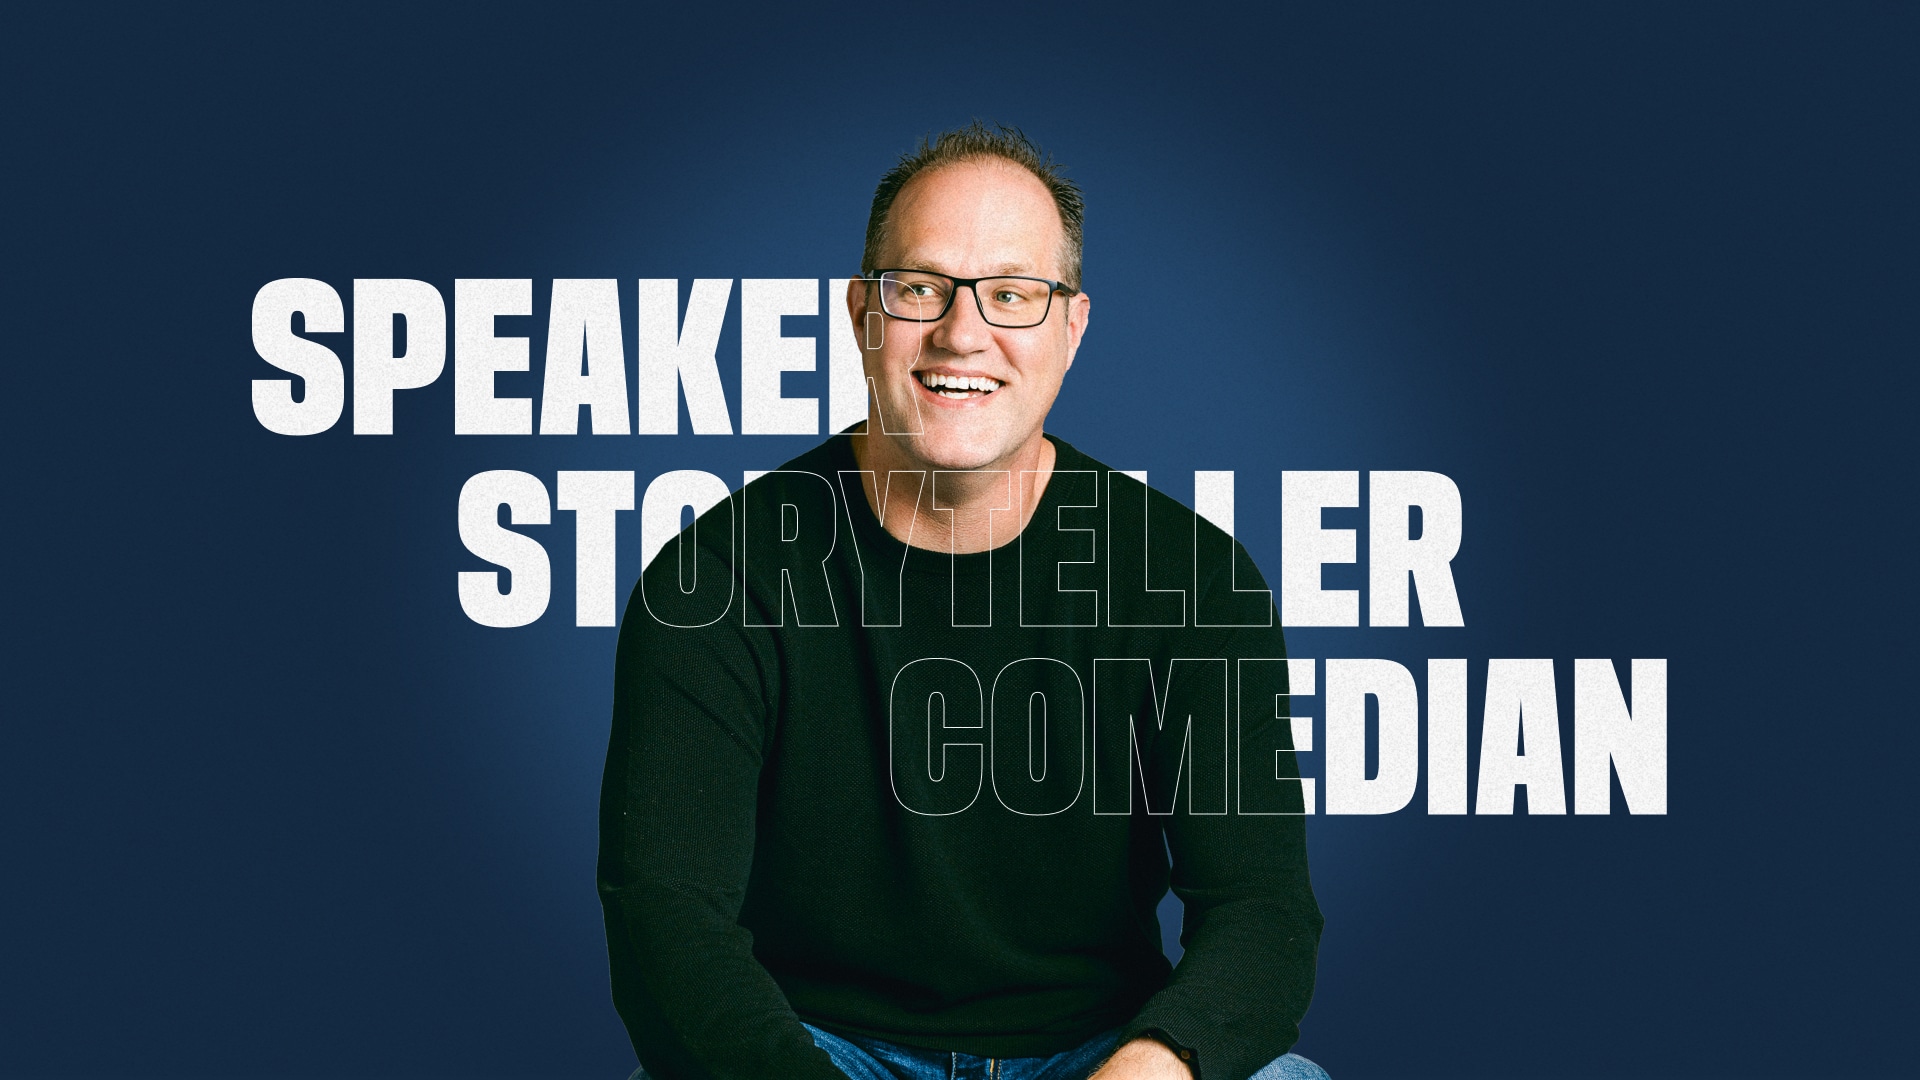 Speaker Storyteller Comedian